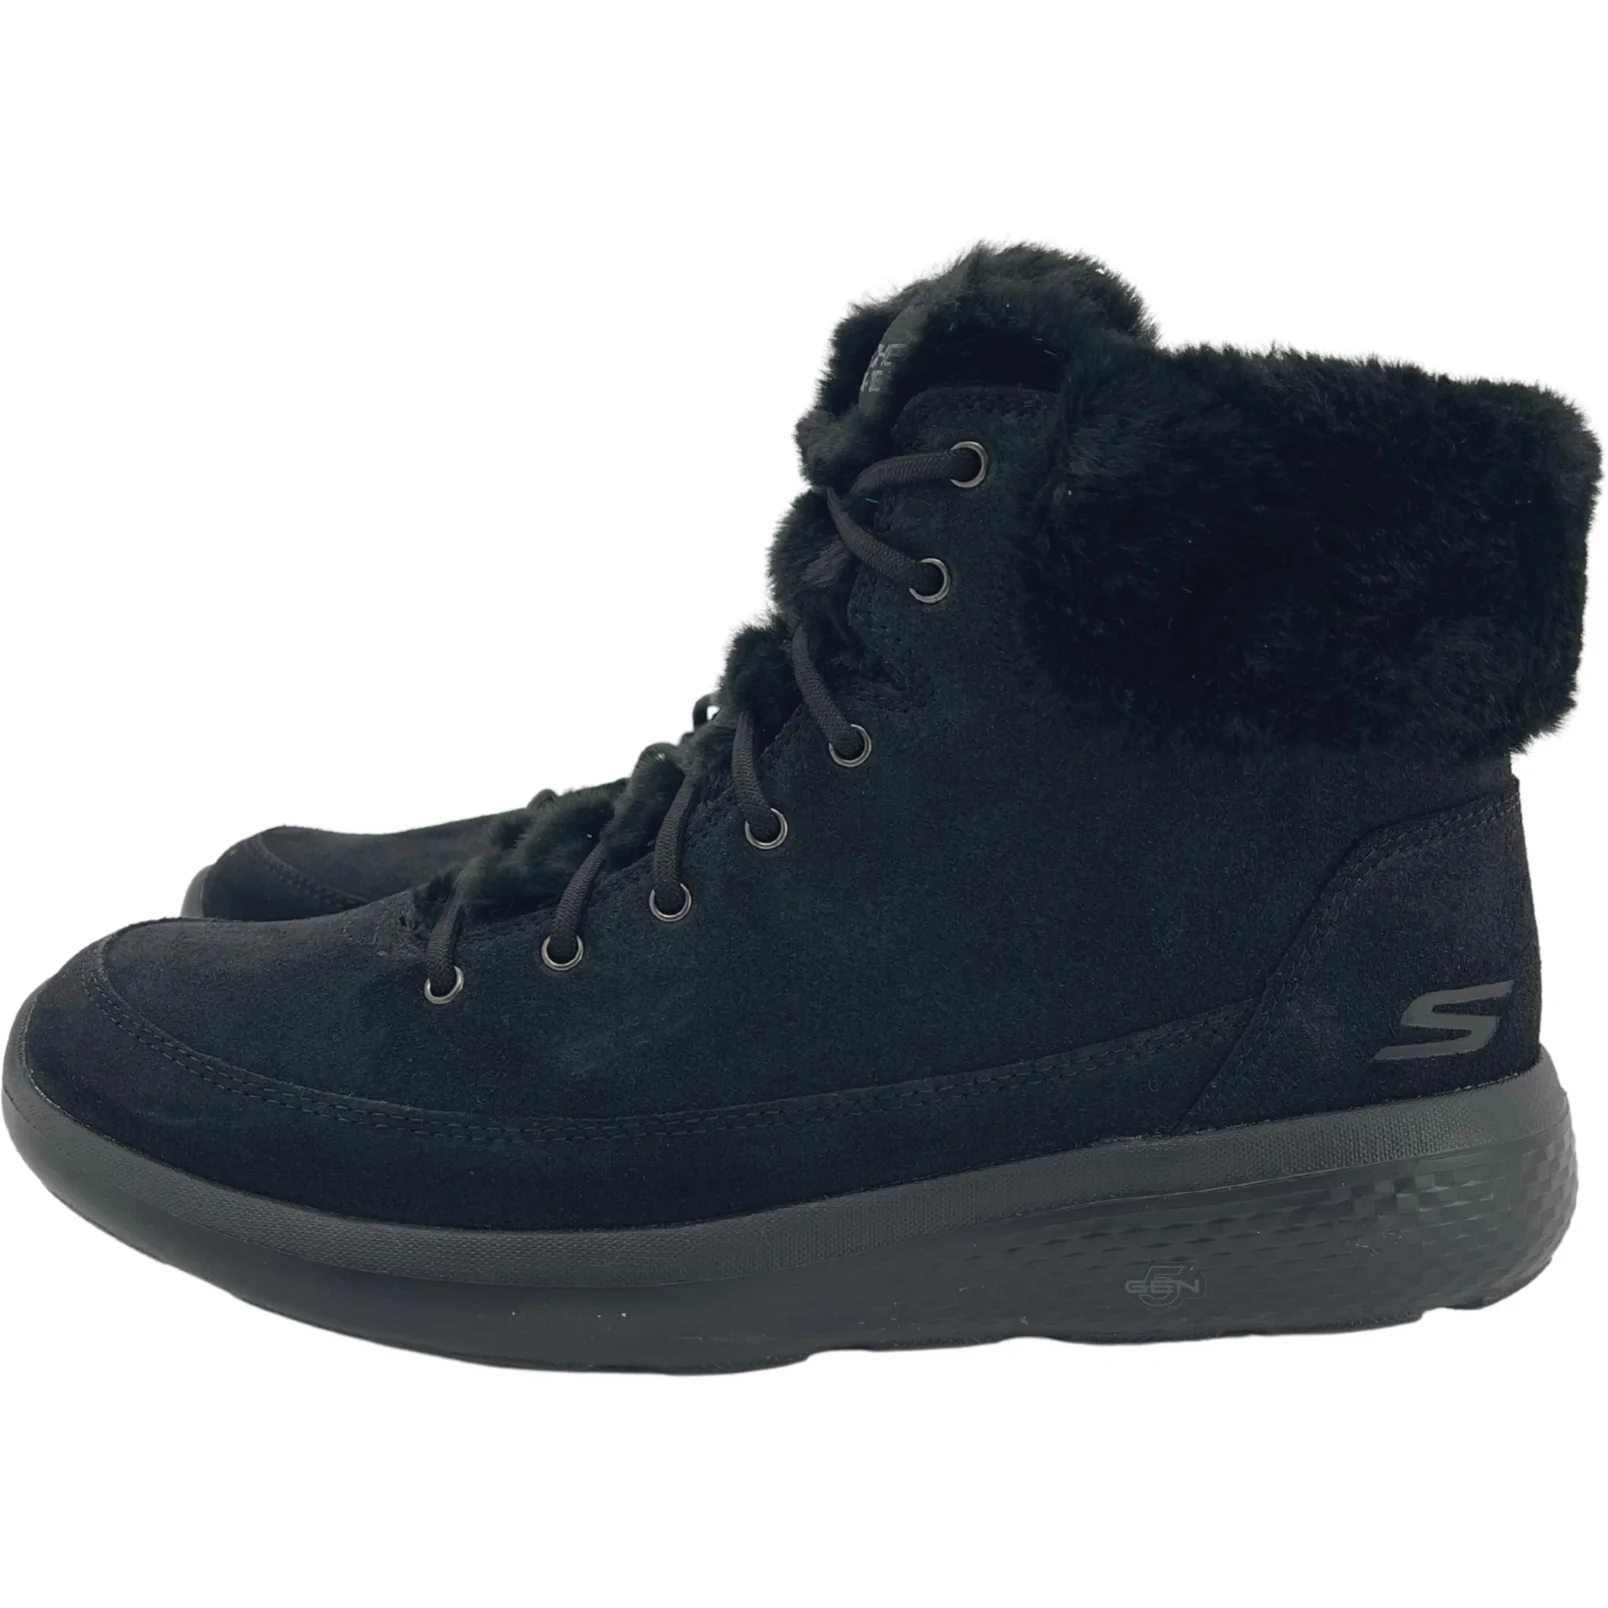 Skechers Women's "Go Walk" Winter Boots / Black / Size 11 / Wide Fit